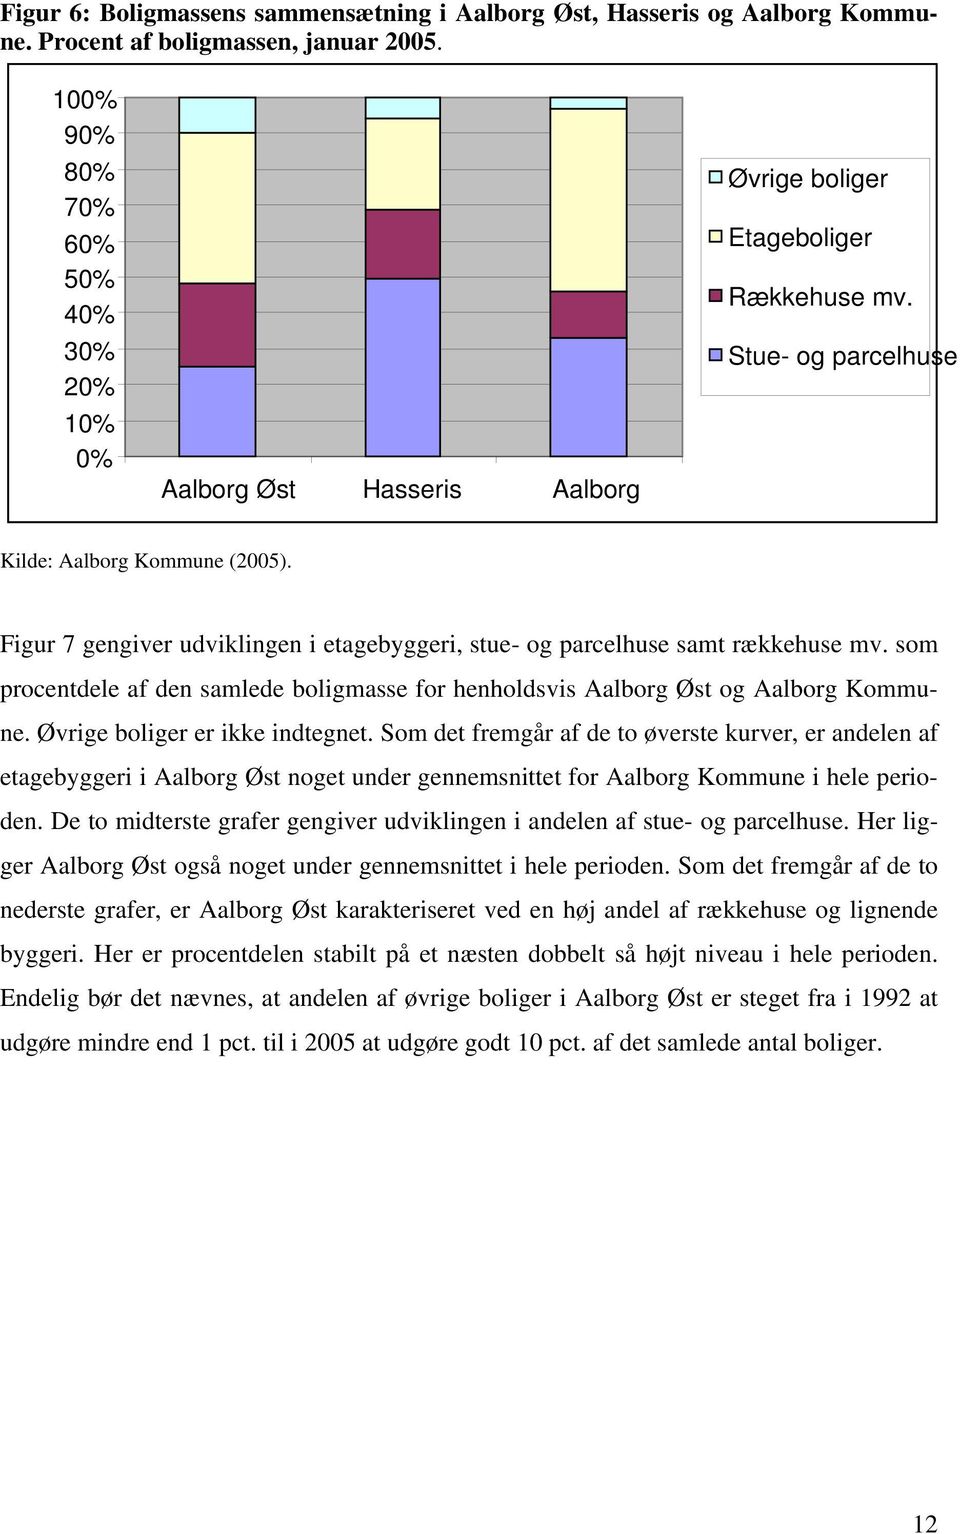 Figur 7 gengiver udviklingen i etagebyggeri, stue- og parcelhuse samt rækkehuse mv. som procentdele af den samlede boligmasse for henholdsvis Aalborg Øst og Aalborg Kommune.